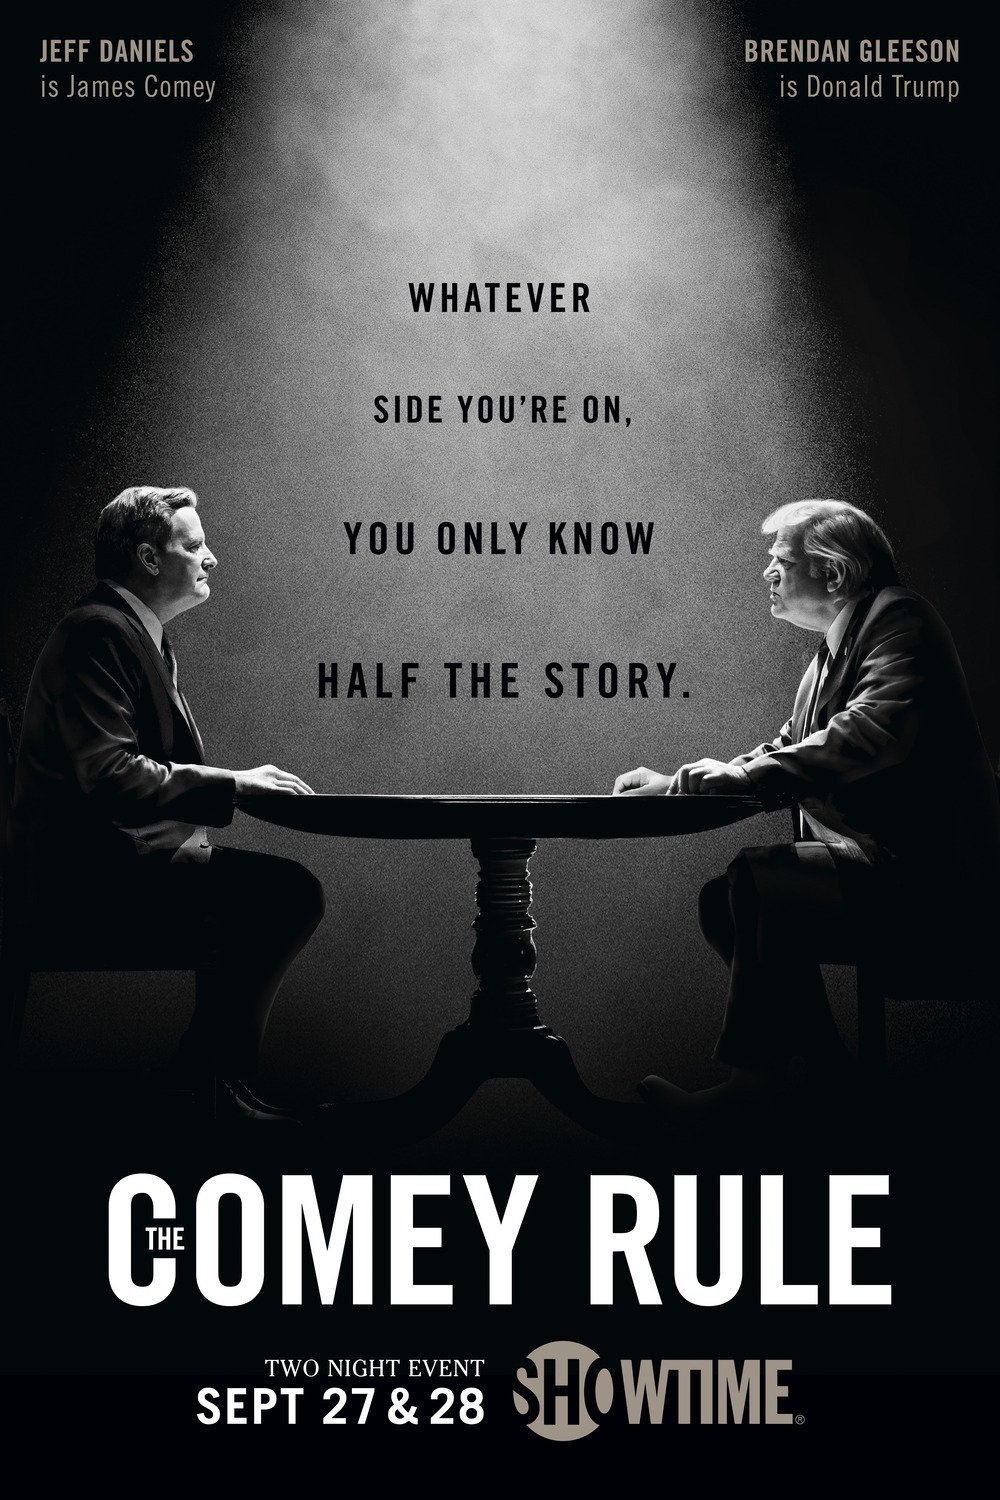  Jeff Daniels e Brendan Gleeson nel poster di The Comey Rule